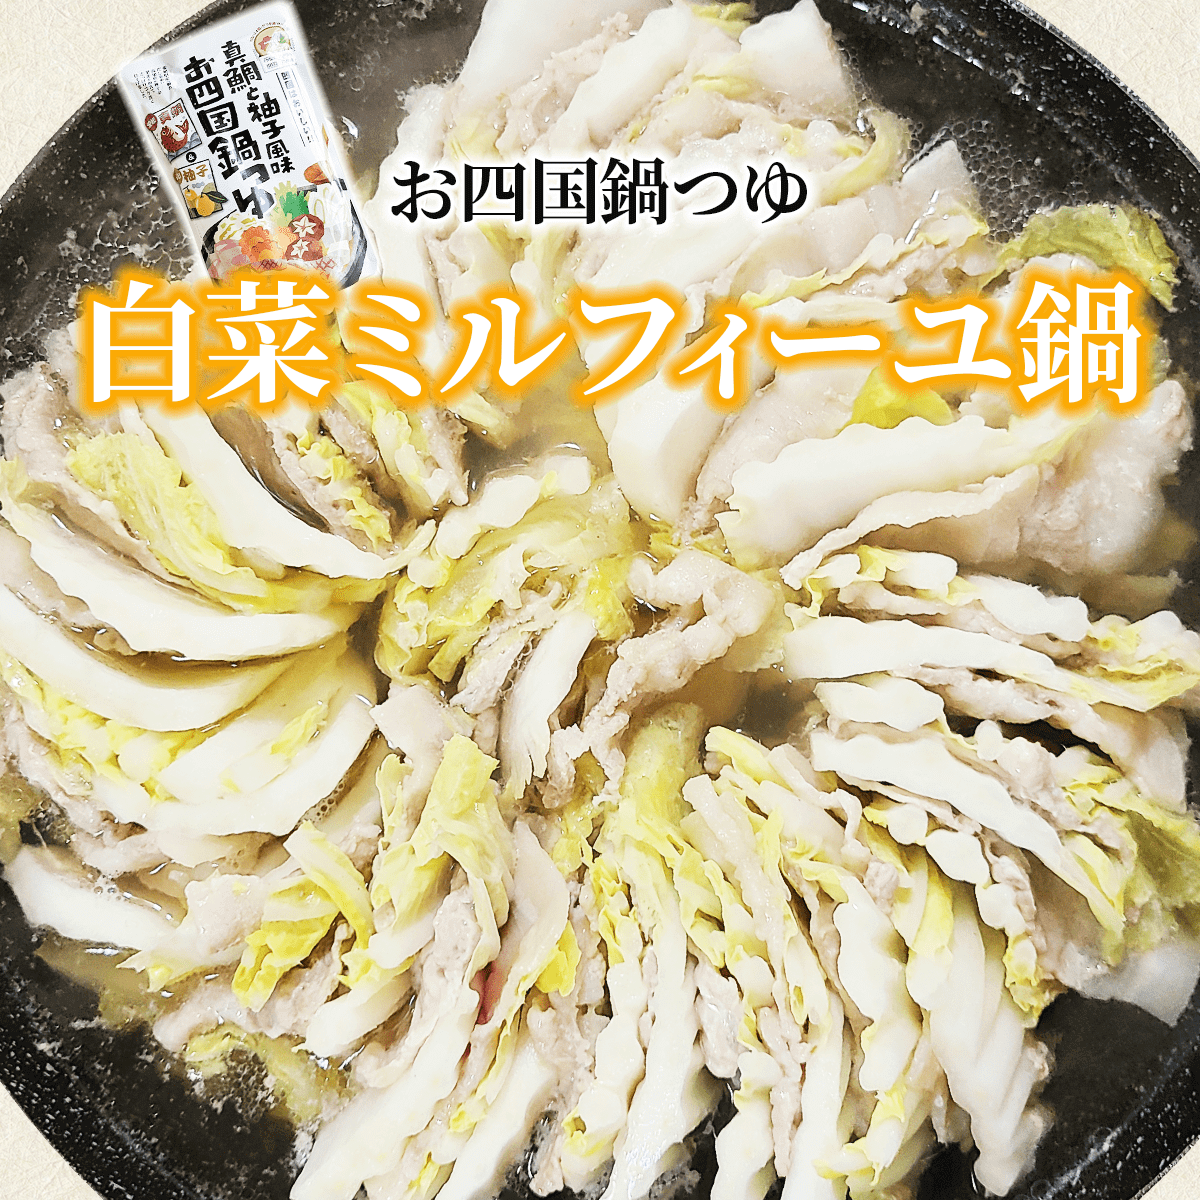  お四国鍋つゆ「白菜ミルフィーユ鍋レシピ」